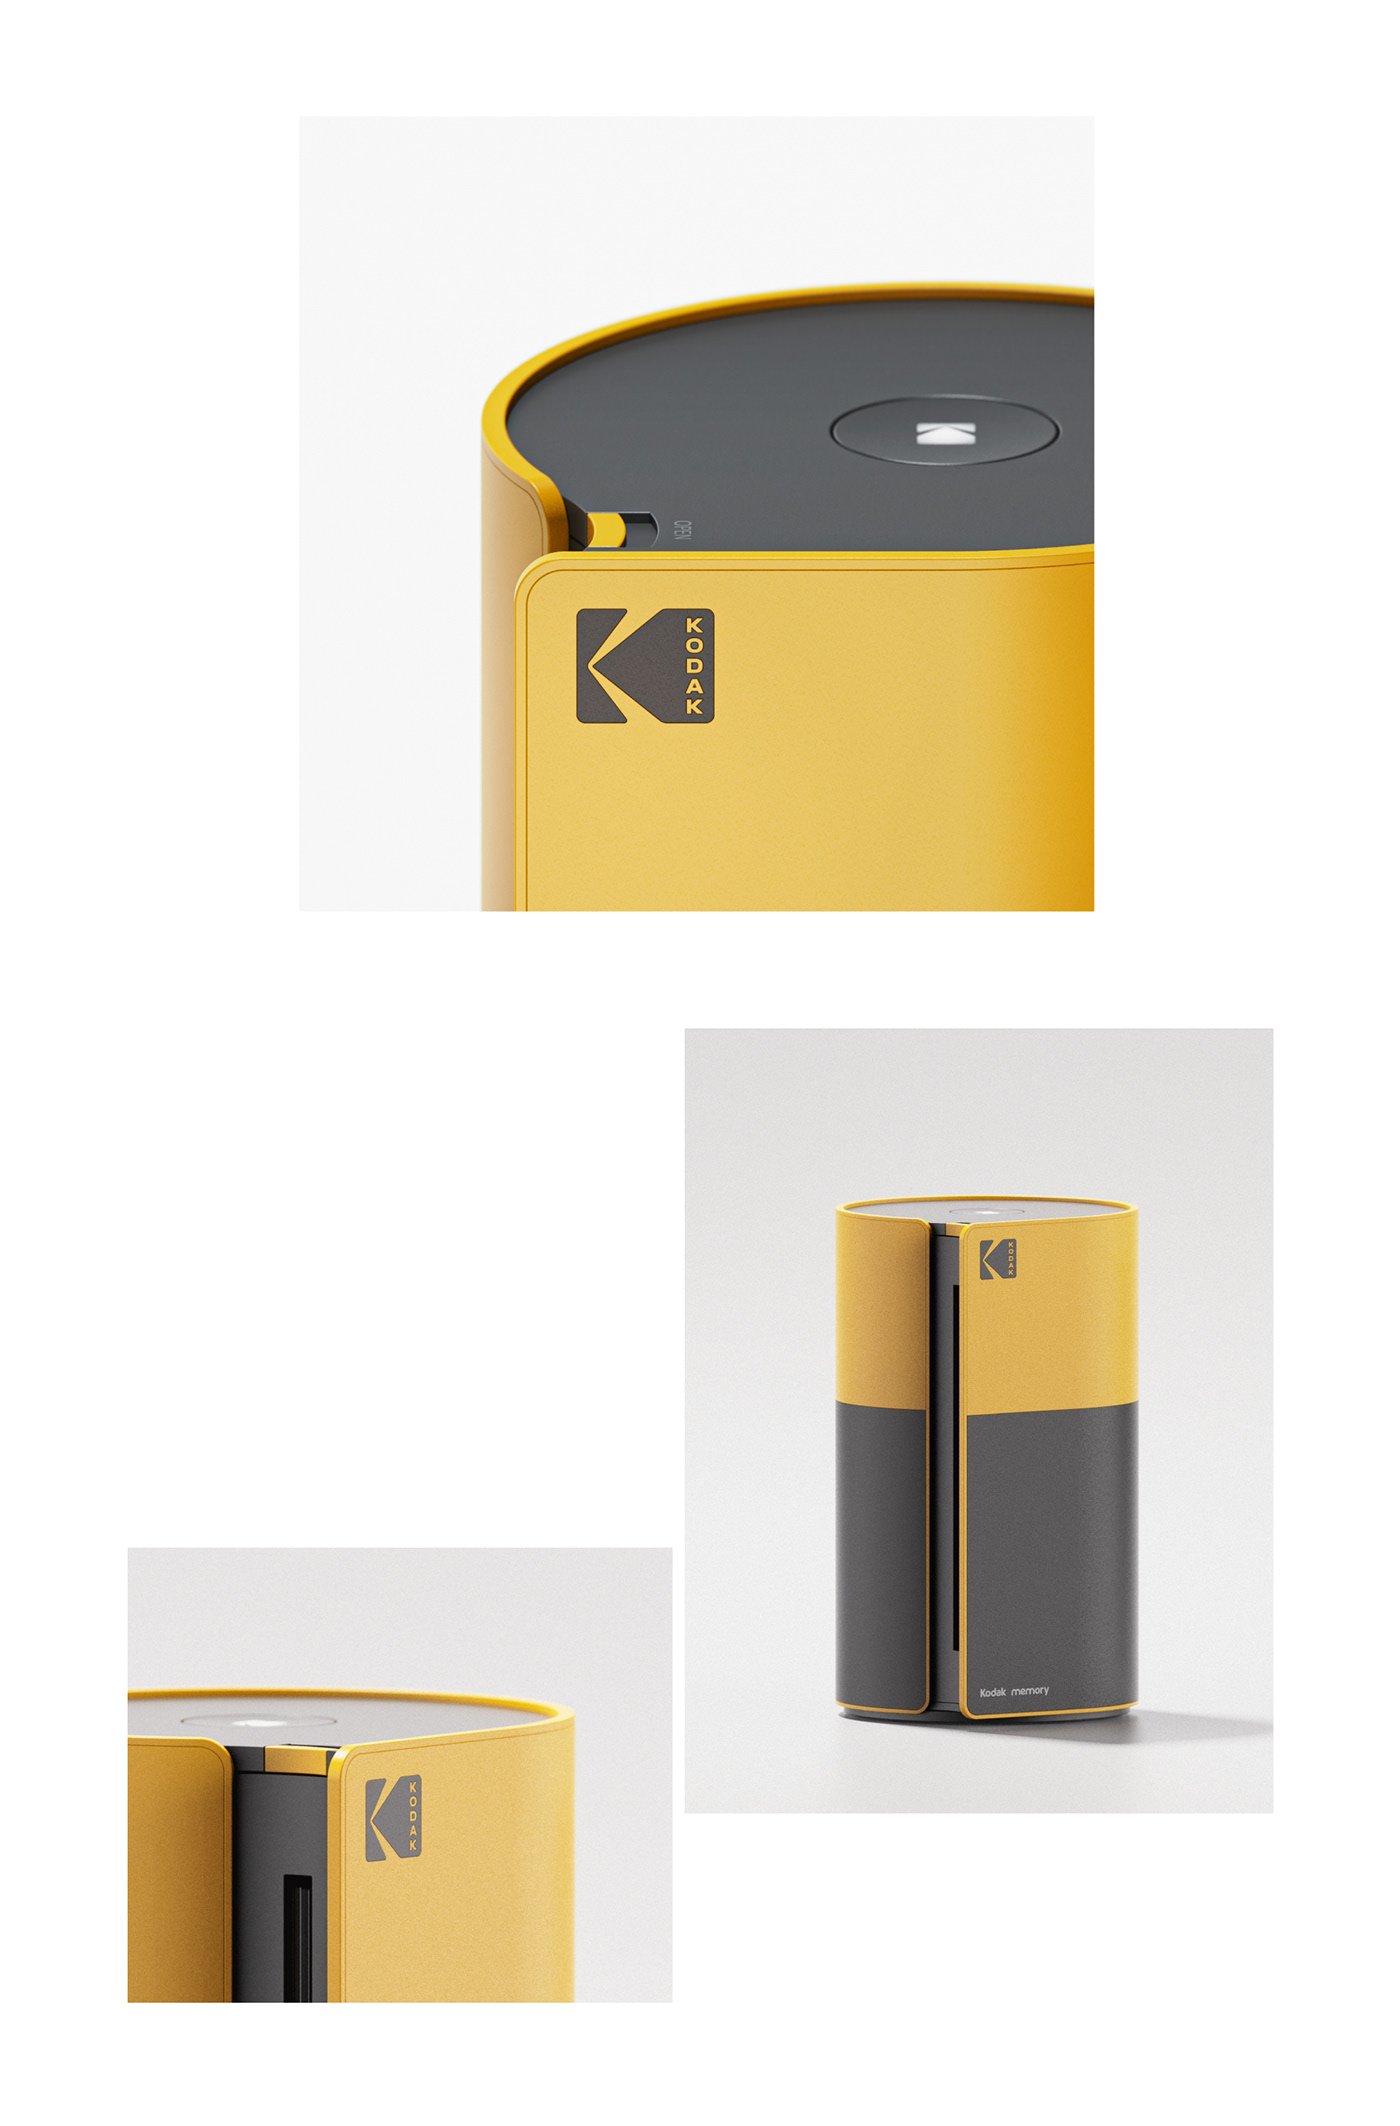 camera Film   industrial kodak POLAROID printer product Retro product design  speaker